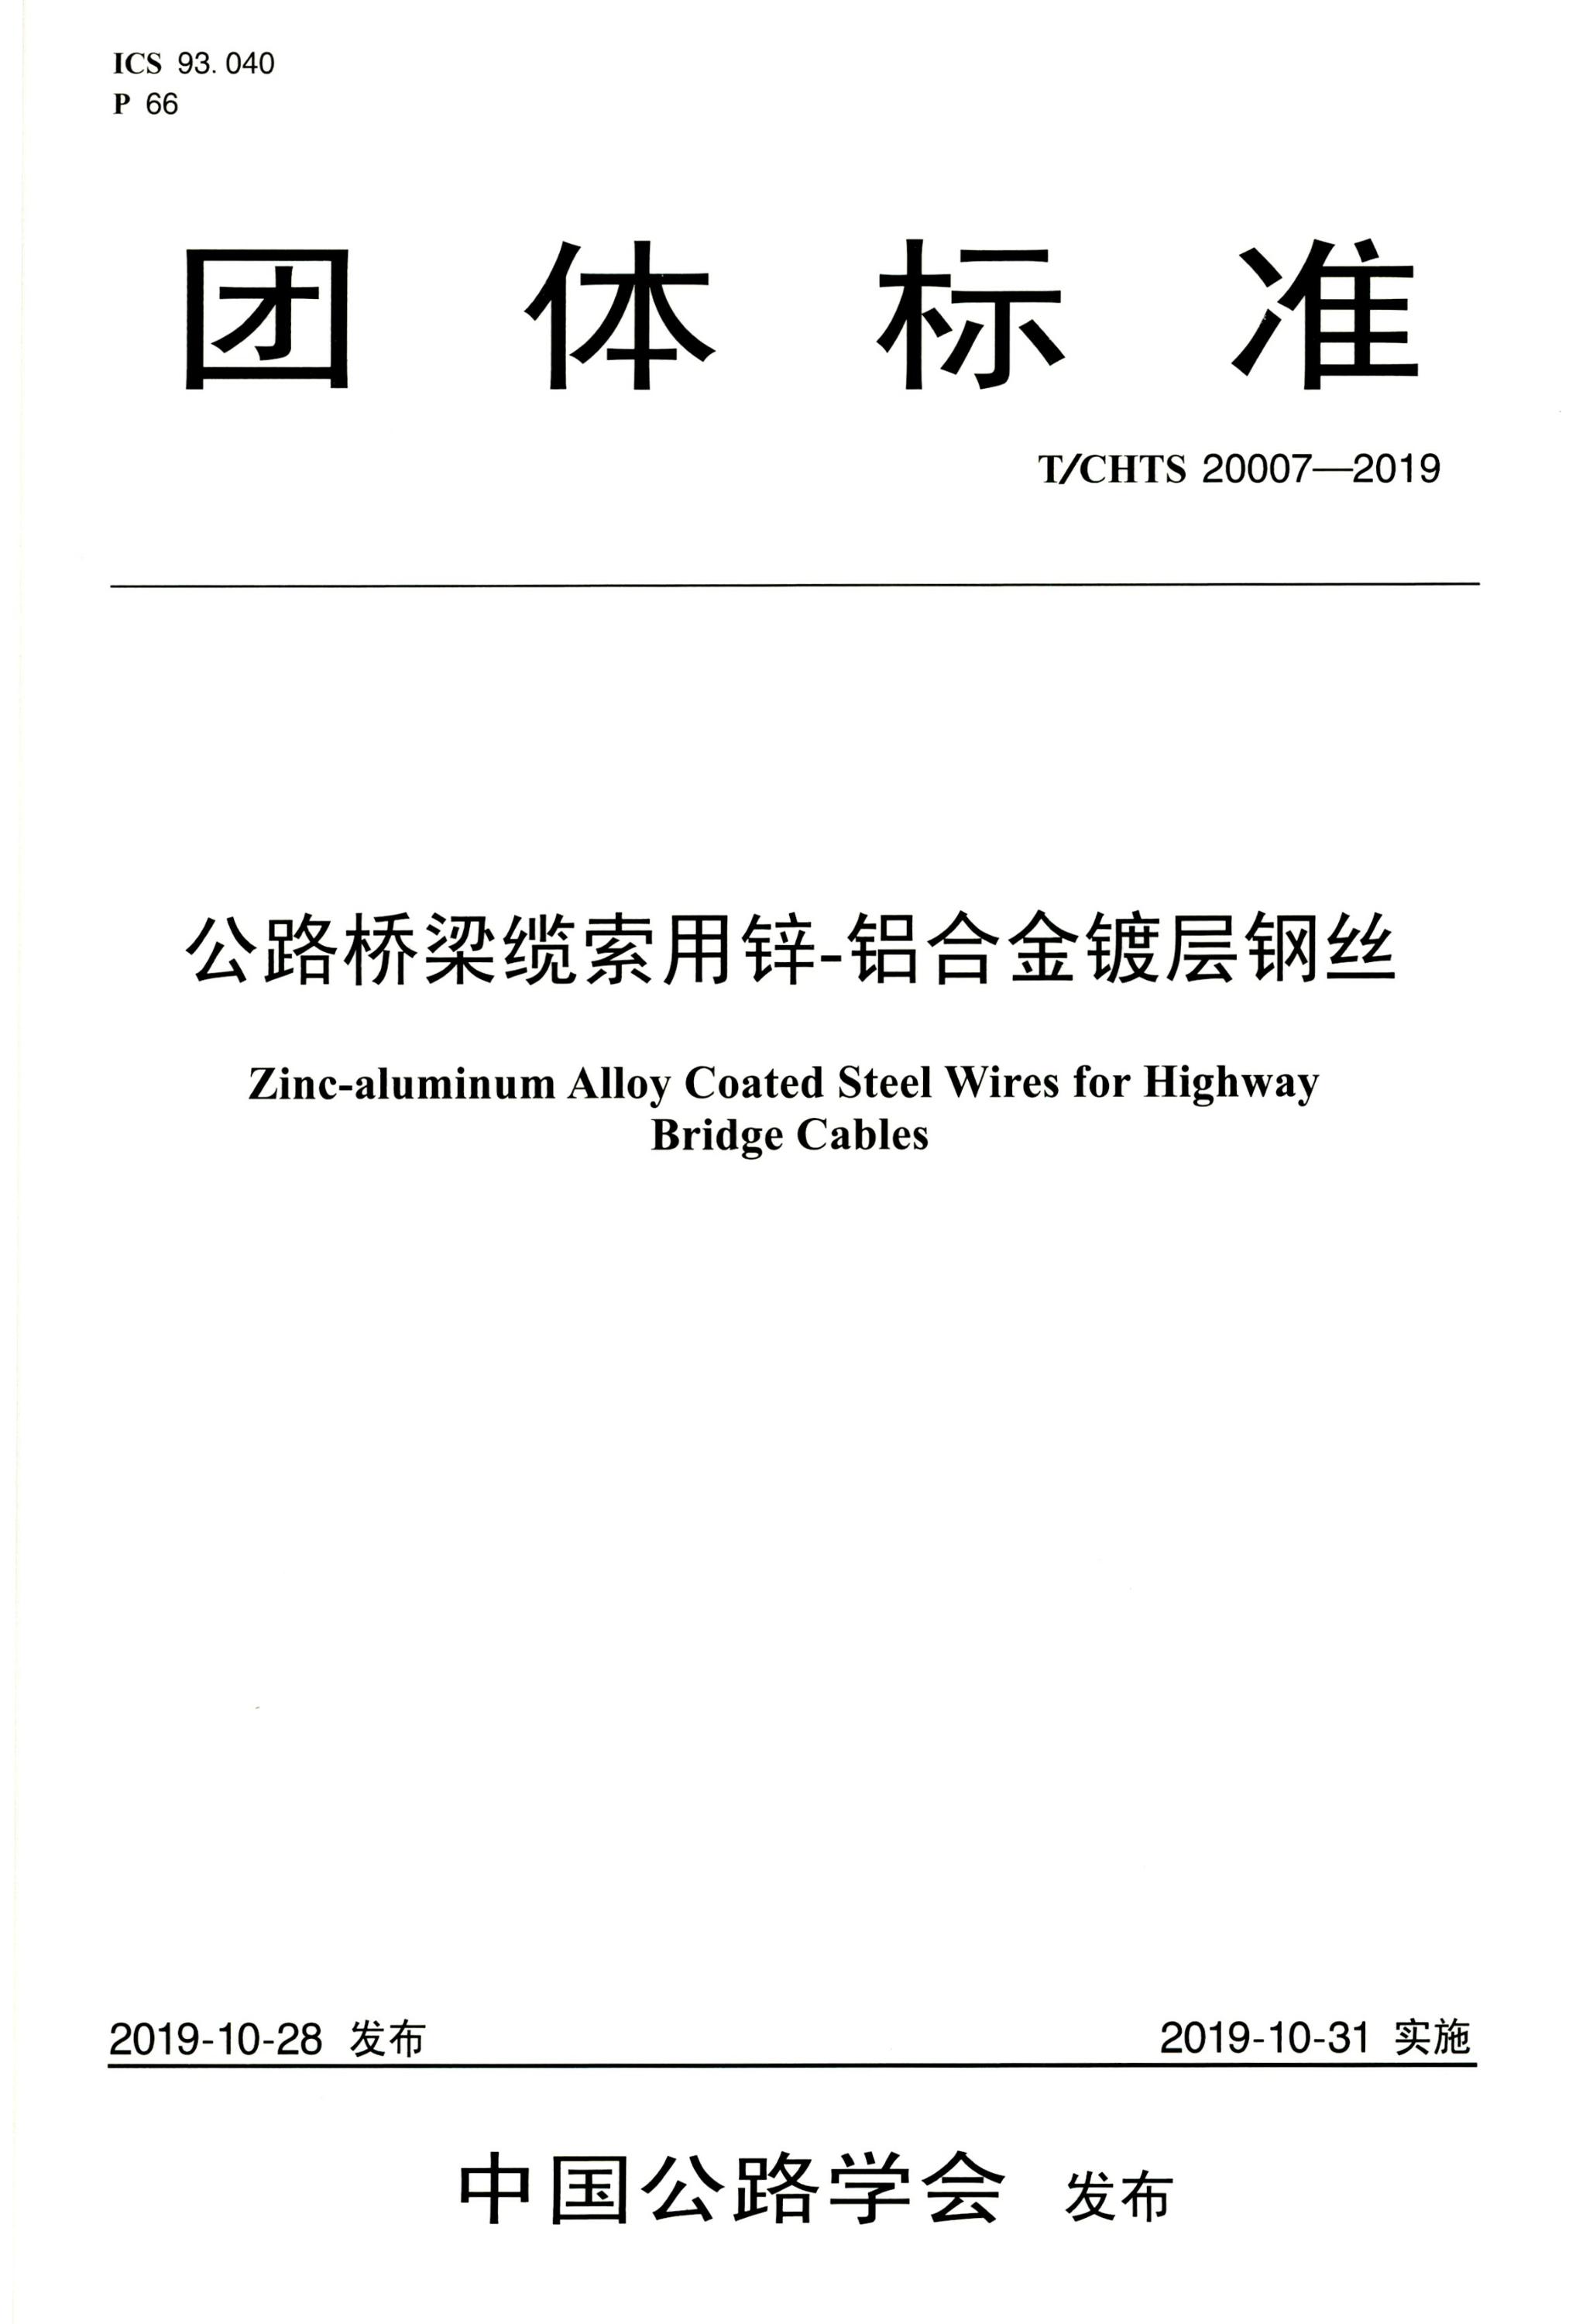 T∕CHTS 20007-2019 公路桥梁缆索用锌-铝合金镀层钢丝资源截图